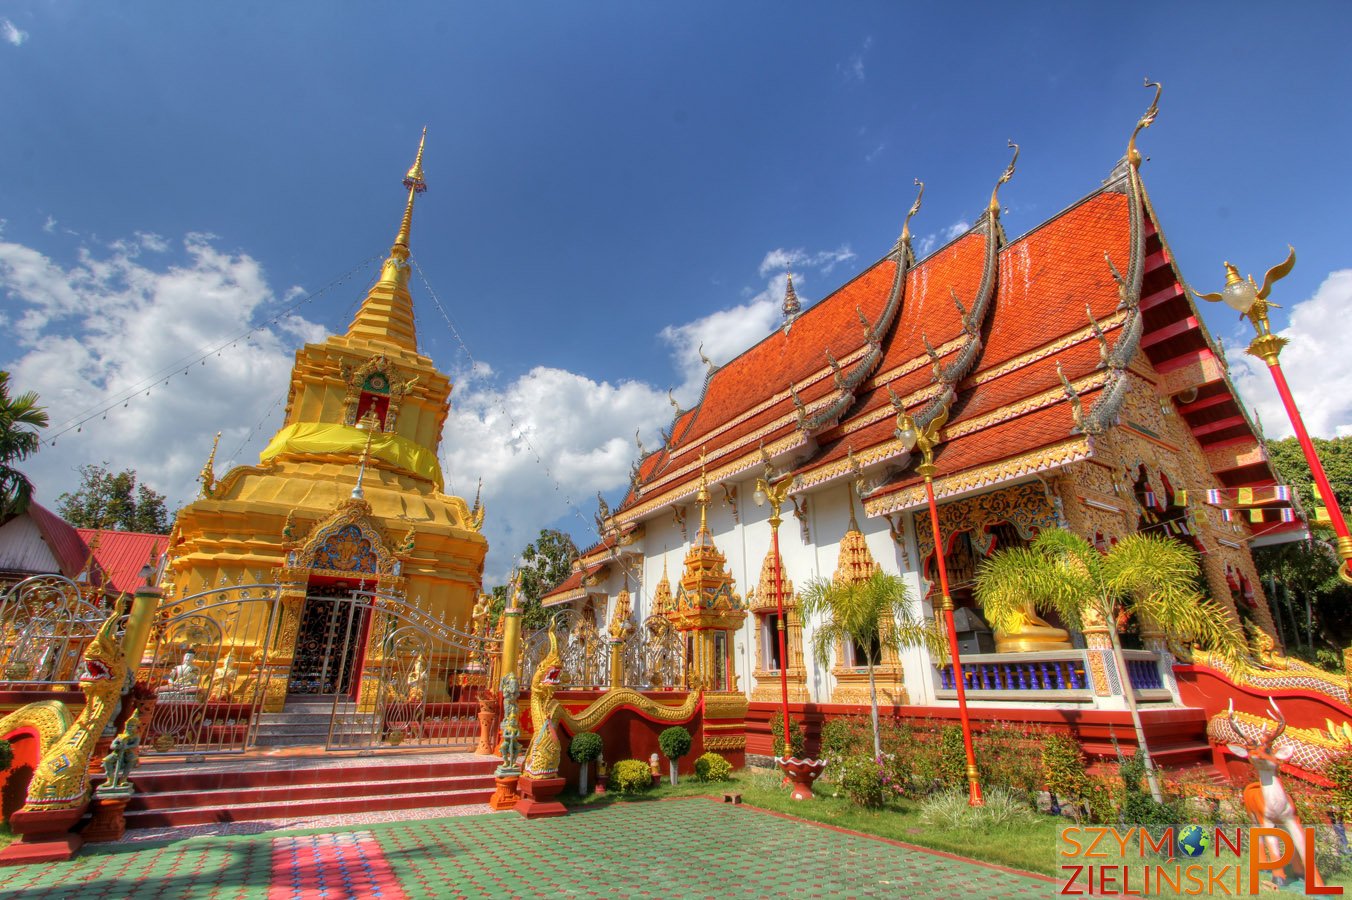 Tha Ton, Chiang Mai province, Thailand